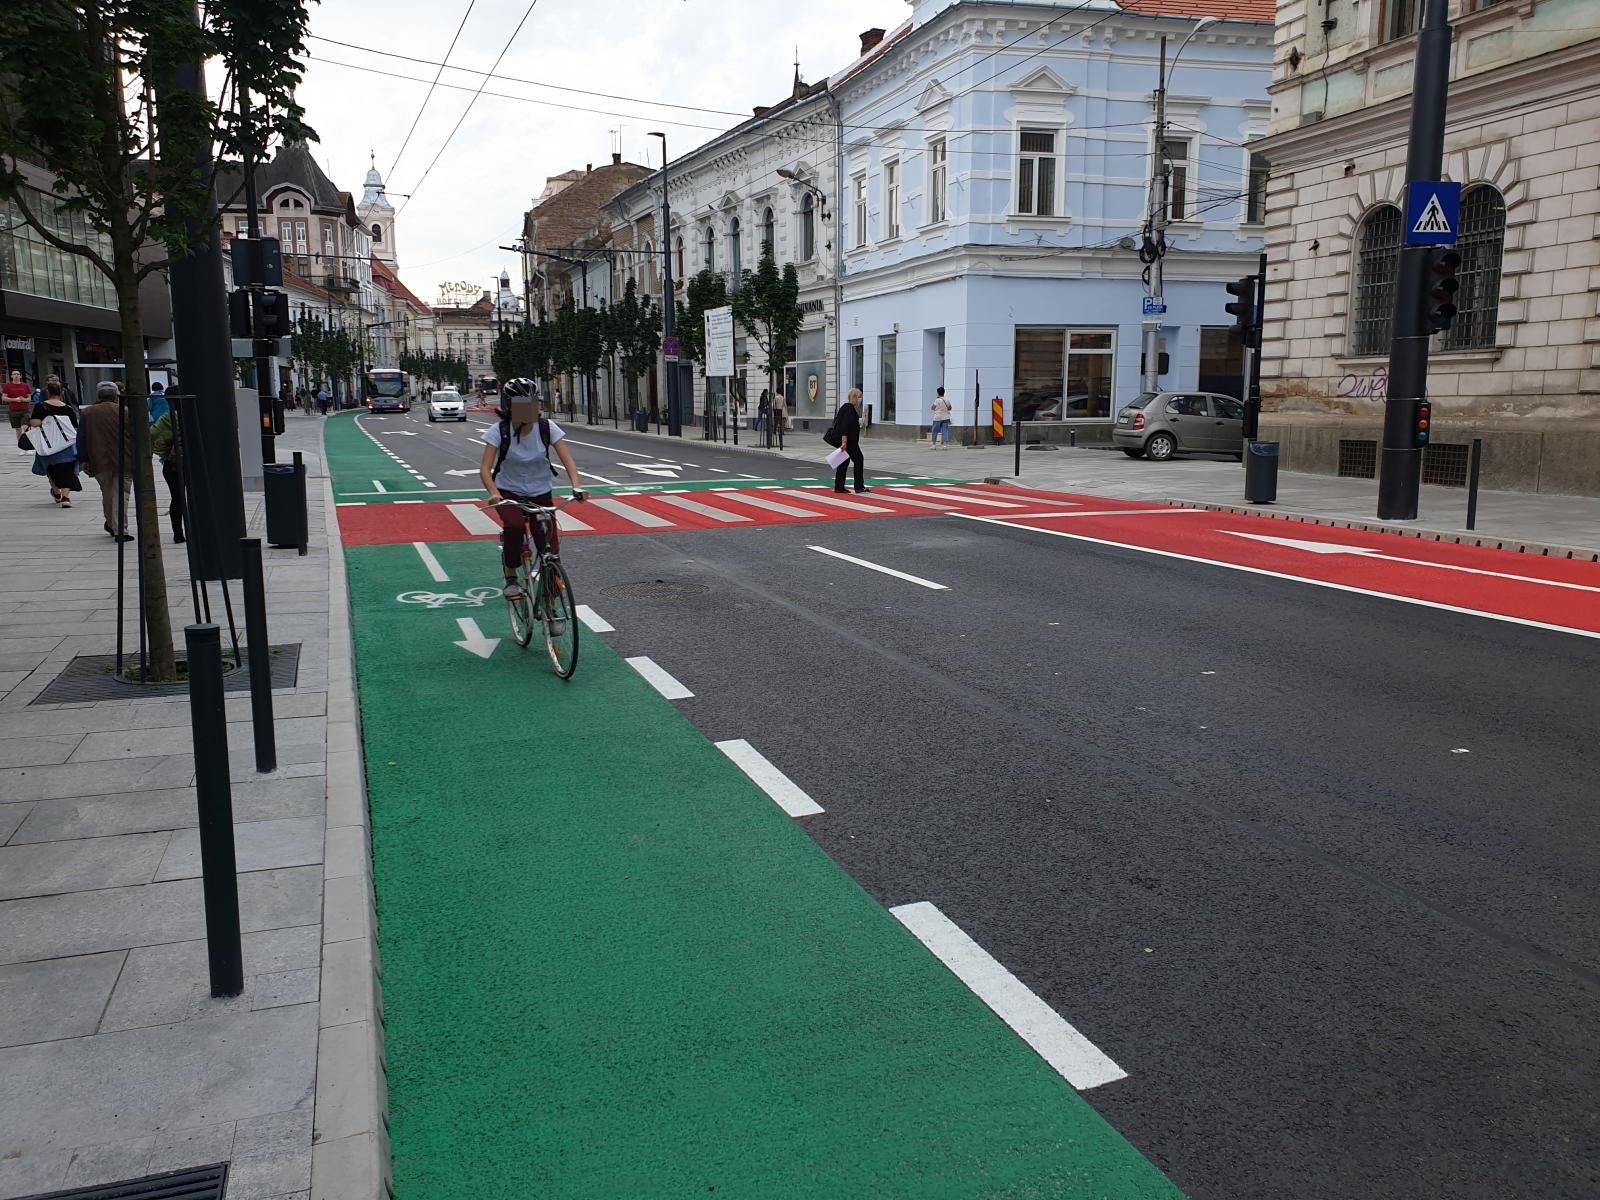  Pe hârtie, Iaşul are mai mulţi kilometri de pistă pentru biciclete decât Clujul